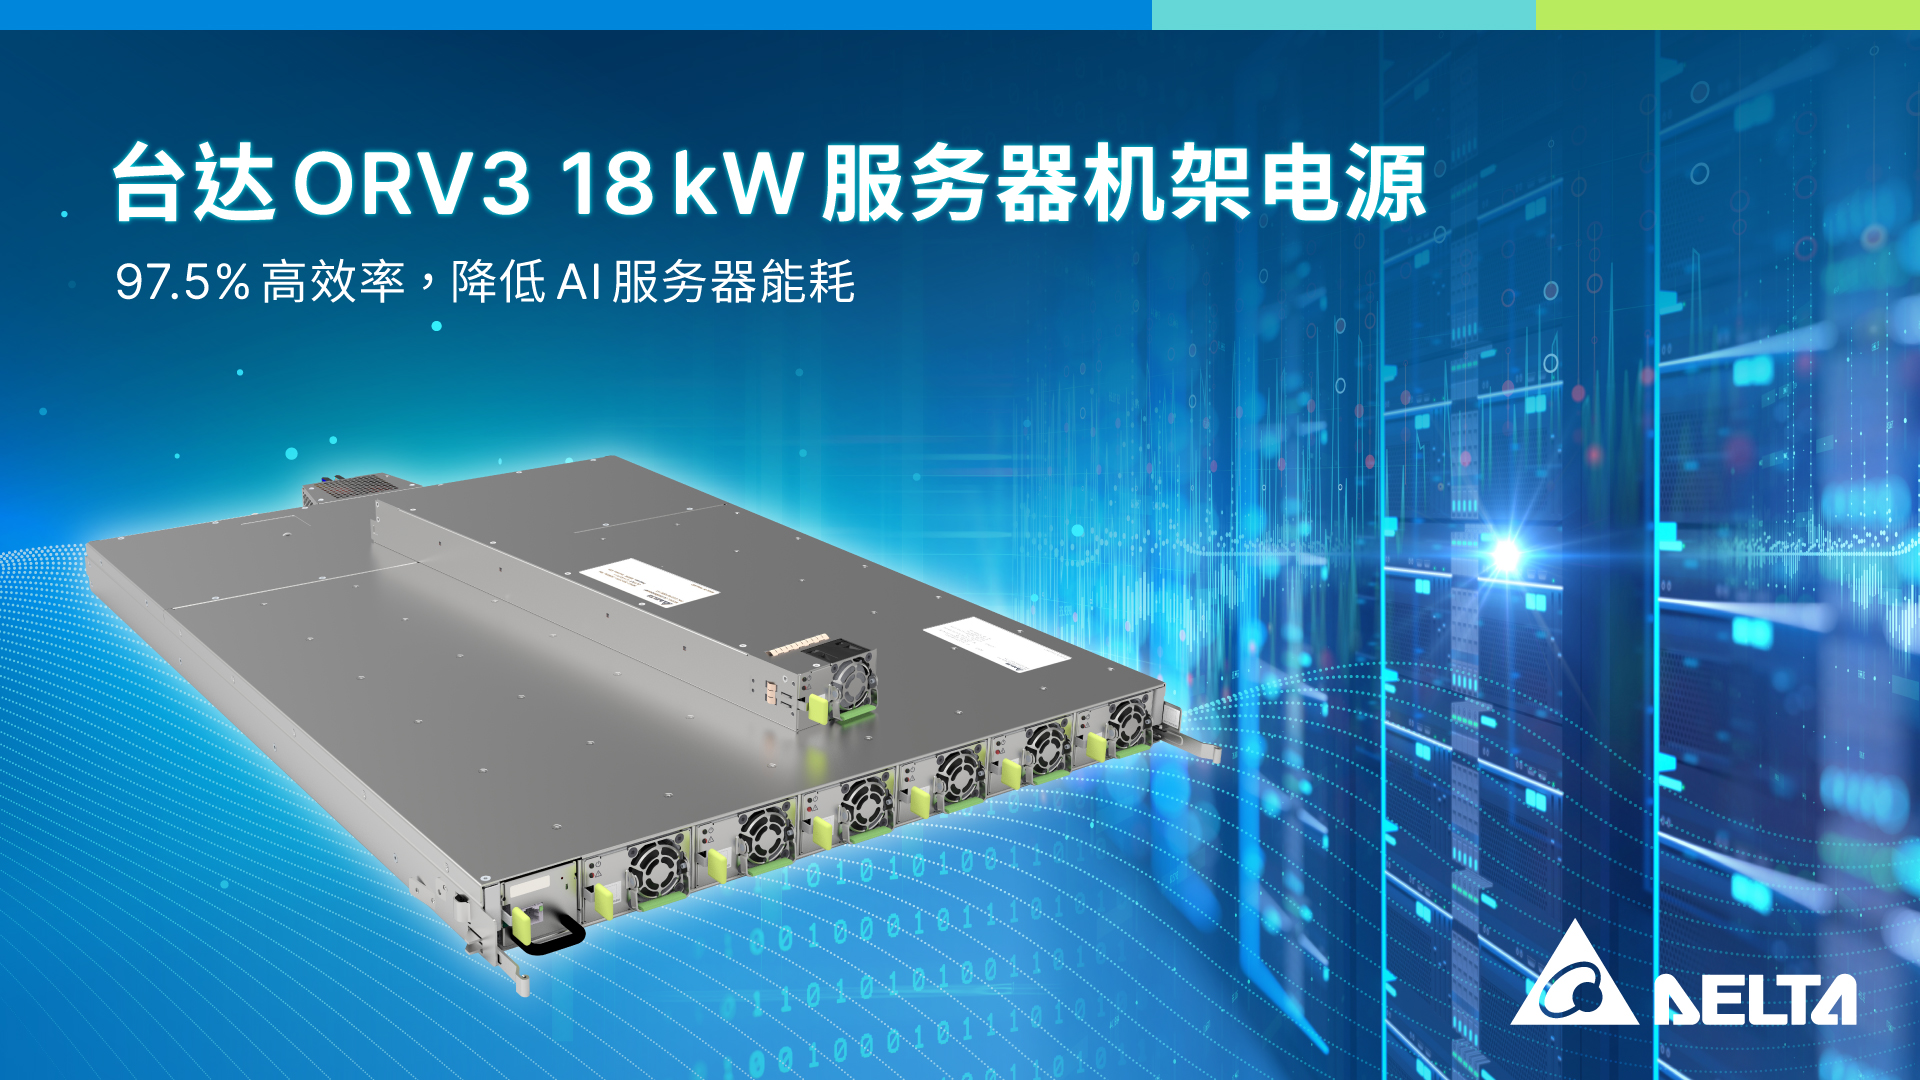 台达推出最新 ORV3 18 kW 机架式电源，能源转换效率最高可达97.5%，助力AI服务器节能